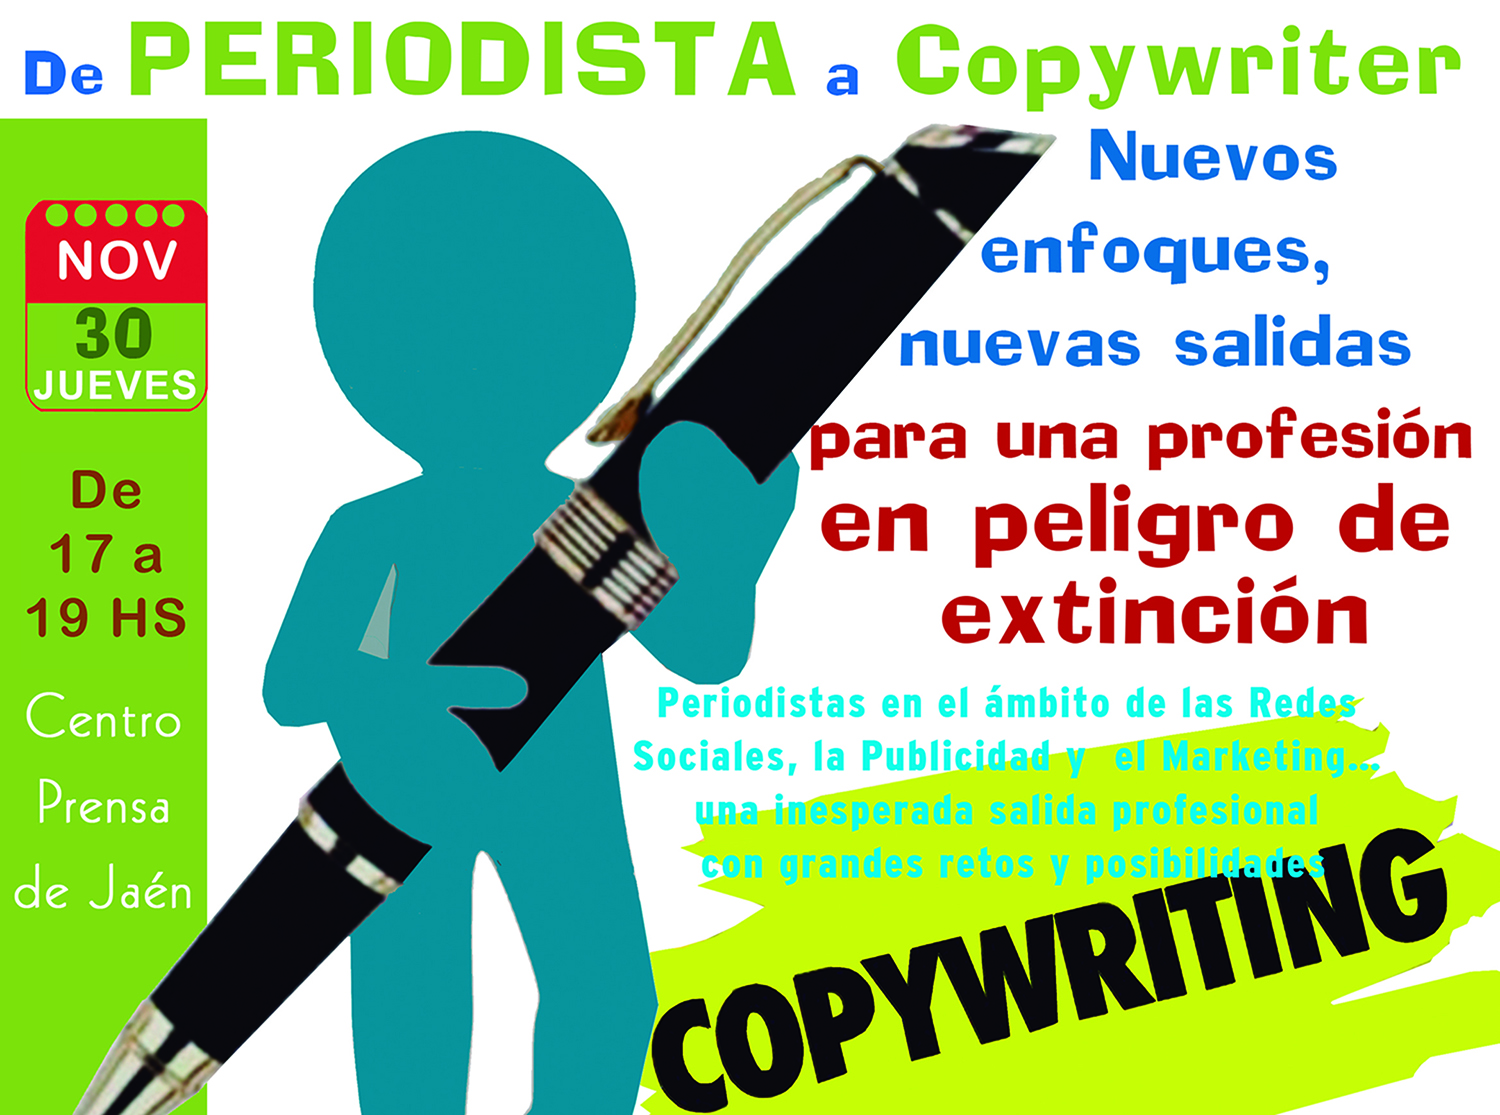 La Asociación de la Prensa de Jaén y la demarcación del Colegio de Periodistas organizan un Taller de iniciación al Copywriting